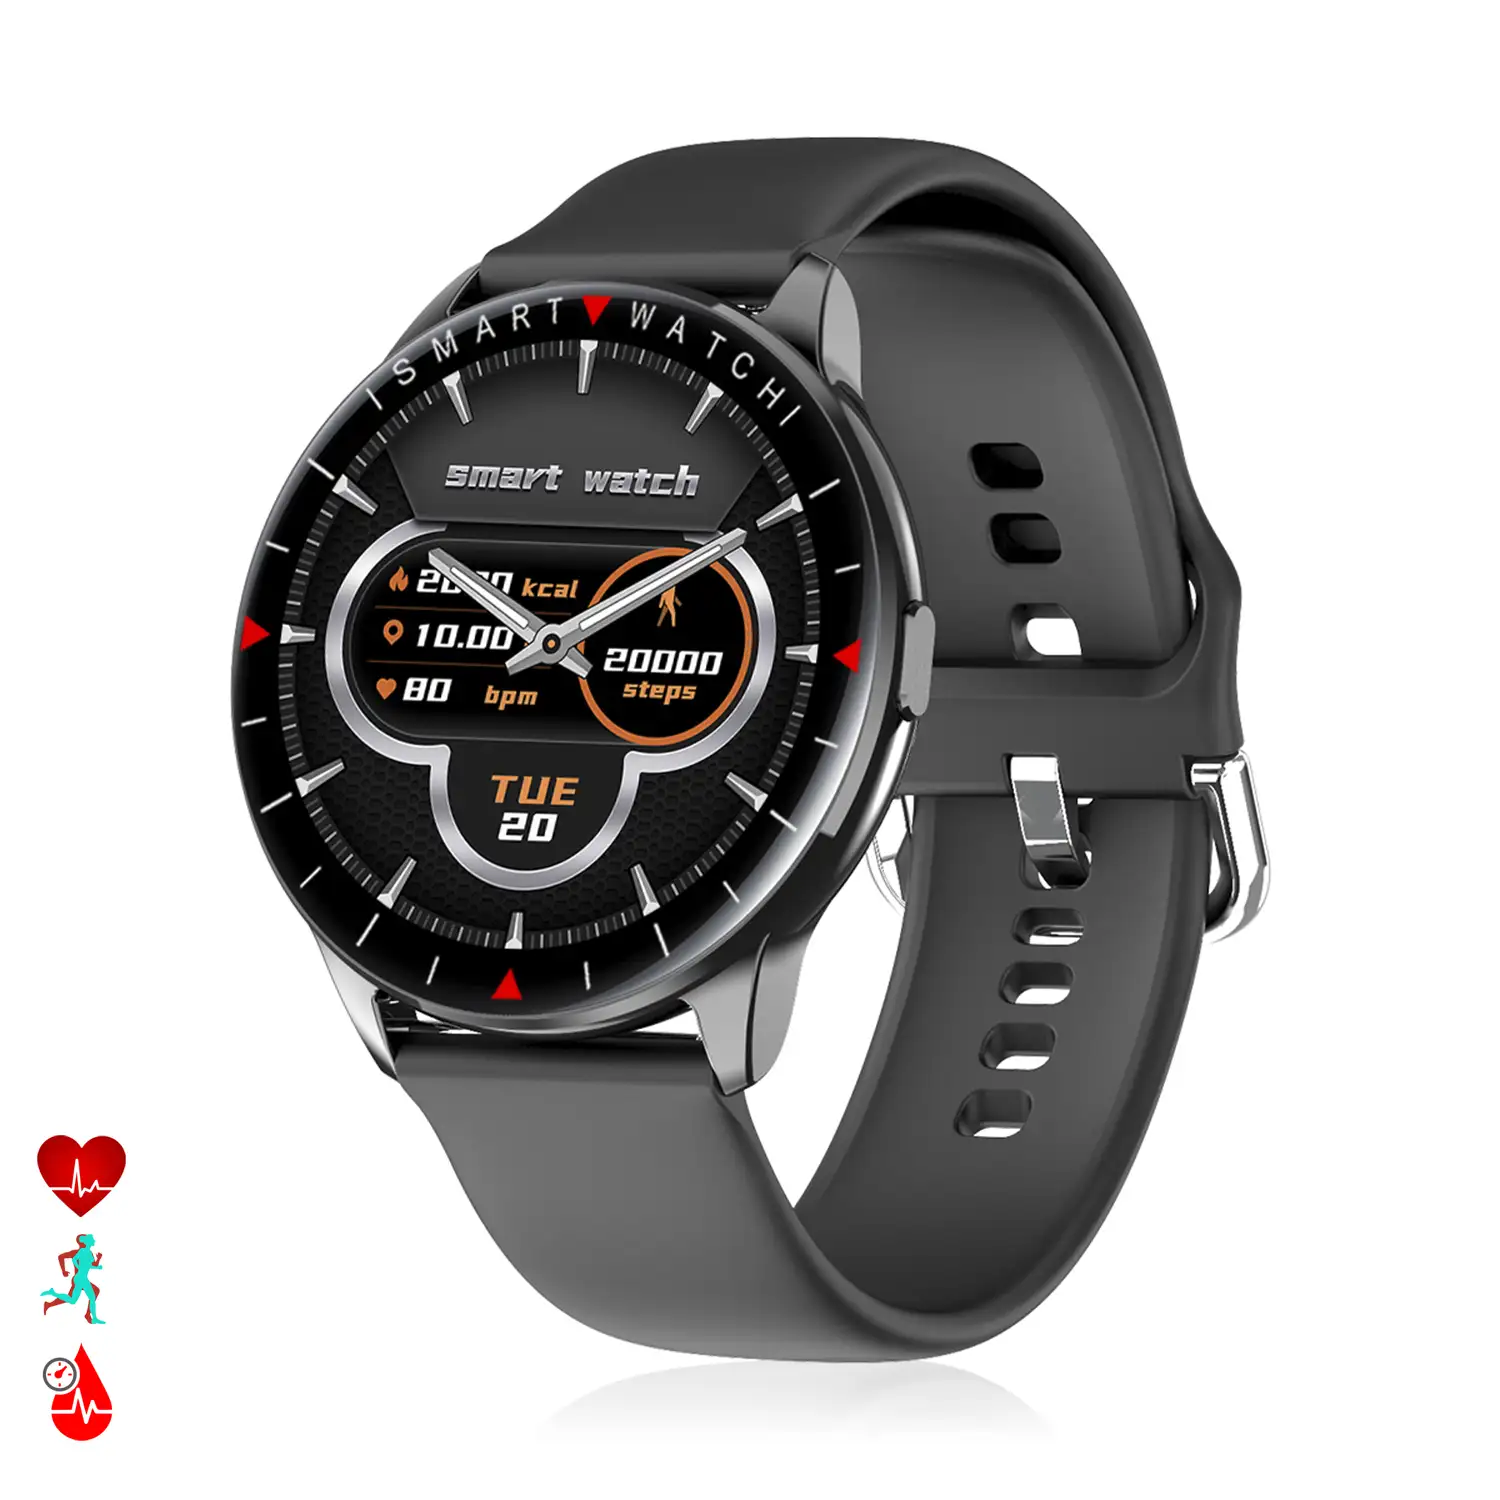 Smartwatch Y90 con 8 modos deportivos, monitor de O2 y tensión. Notificaciones con mensaje en pantalla.